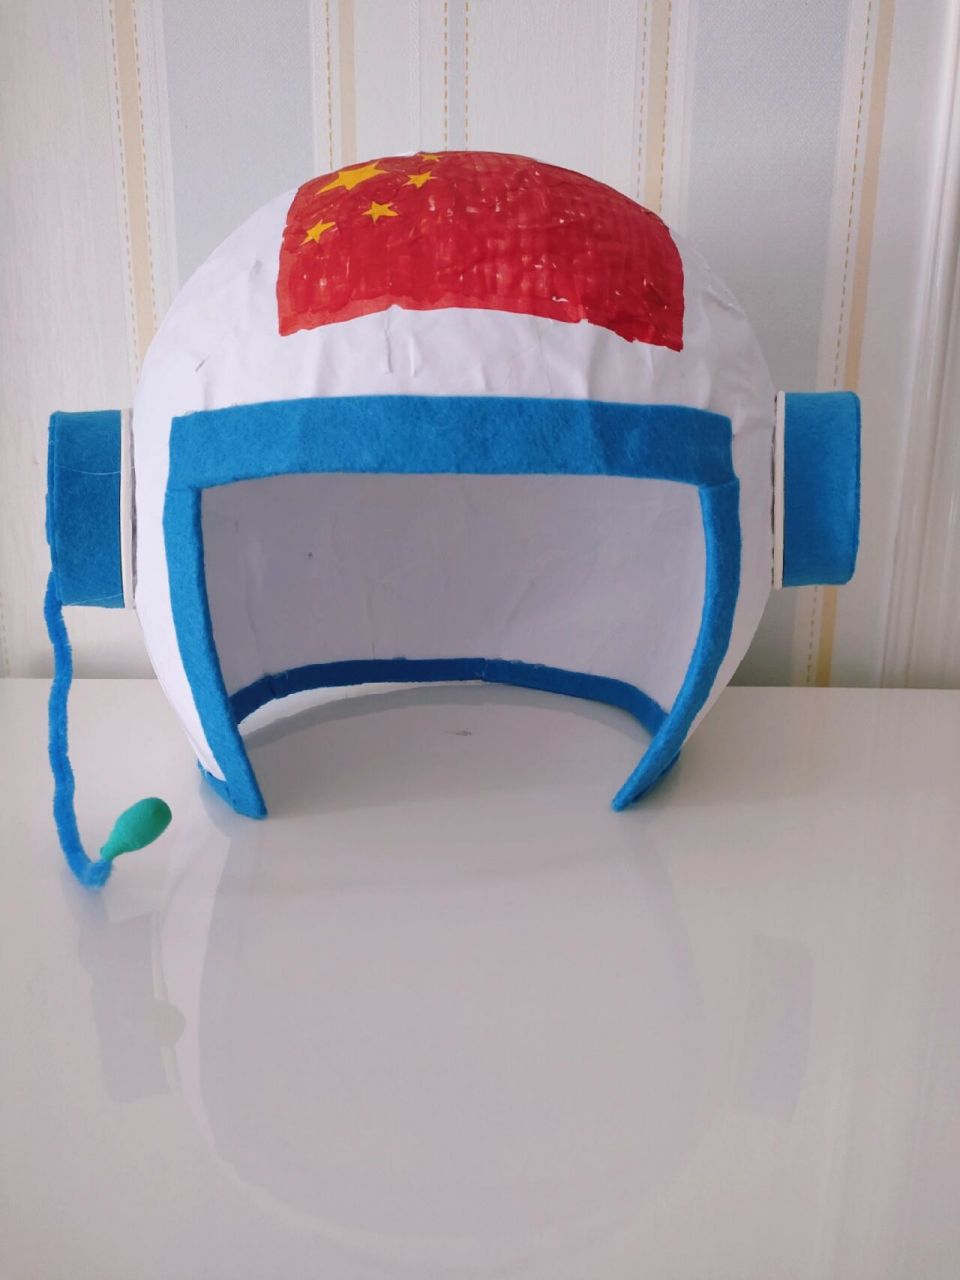 自制宇航员头盔 样子是有的,但是中看不中用啊!